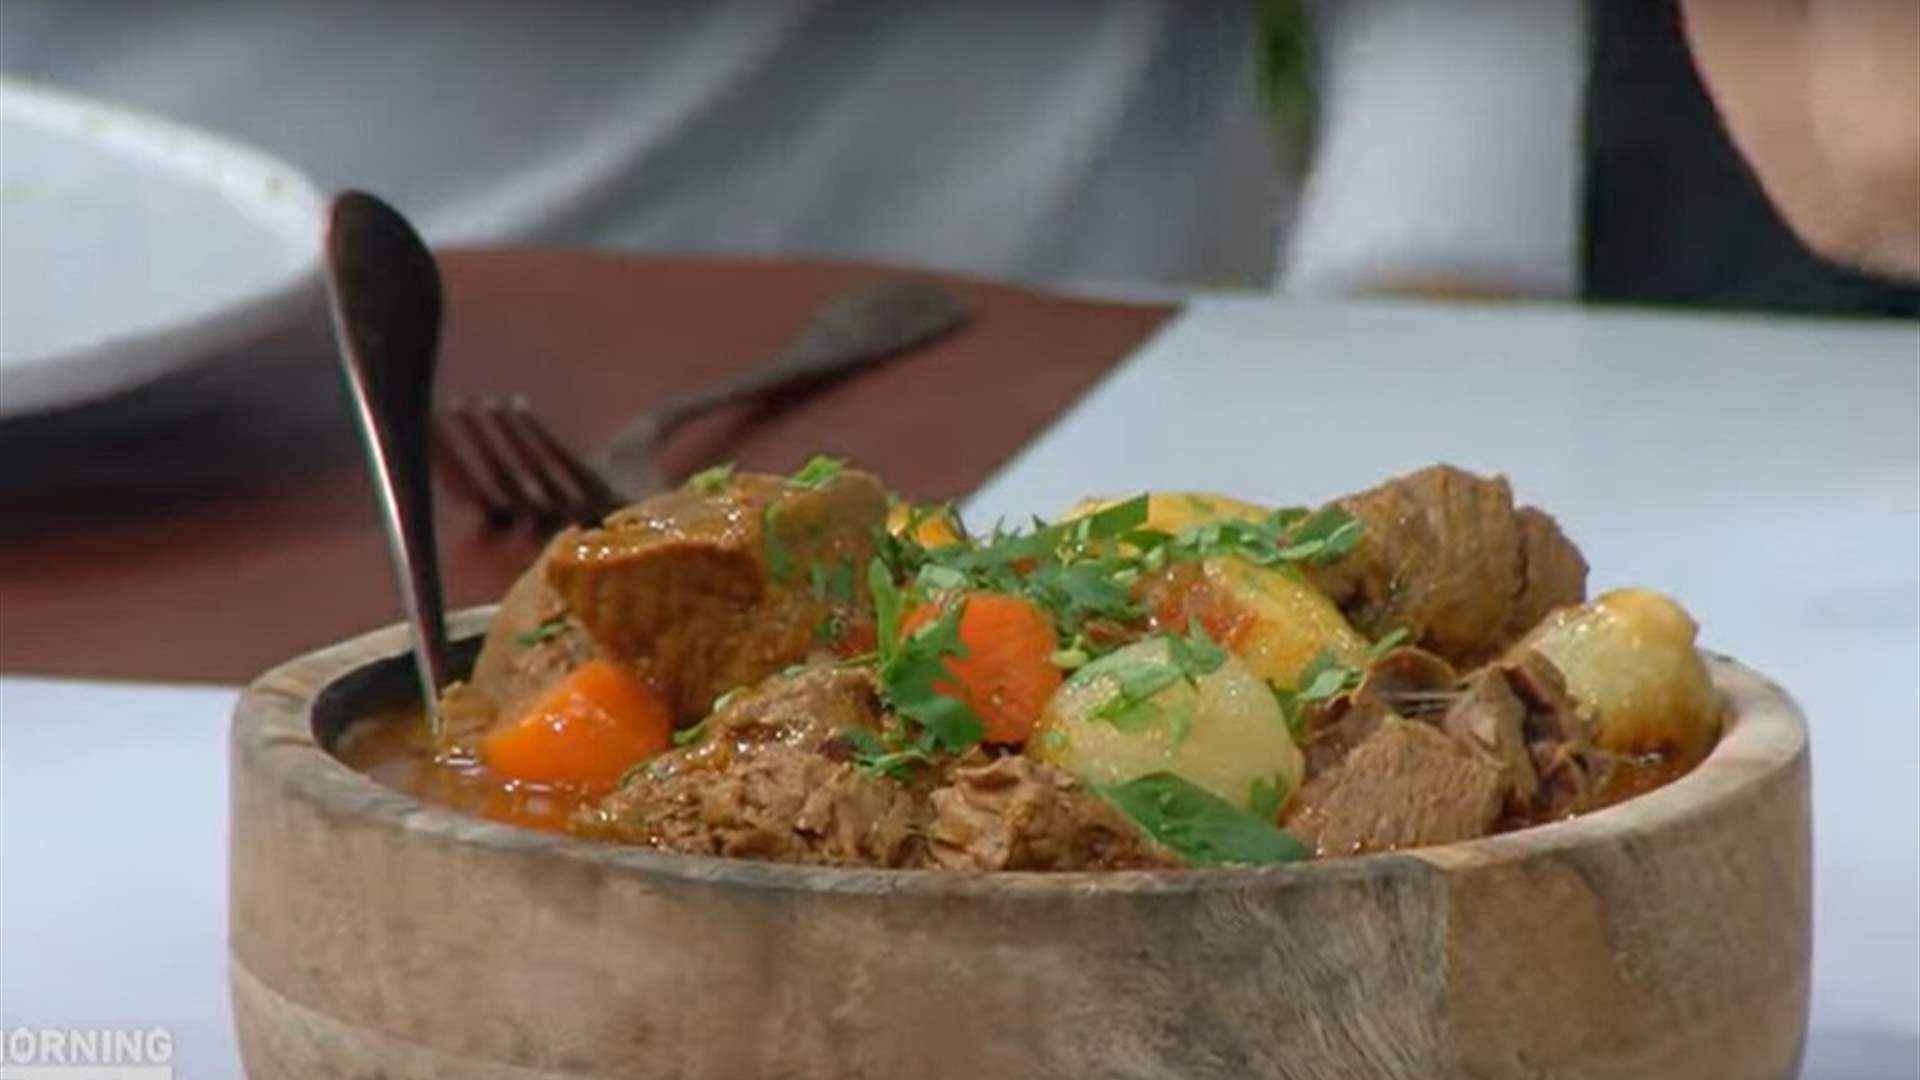 تعلموا تحضير يخنة اللحم مع الأرز والخضار بطريقة لذيذة مع الشيف حنا طويل! (فيديو)